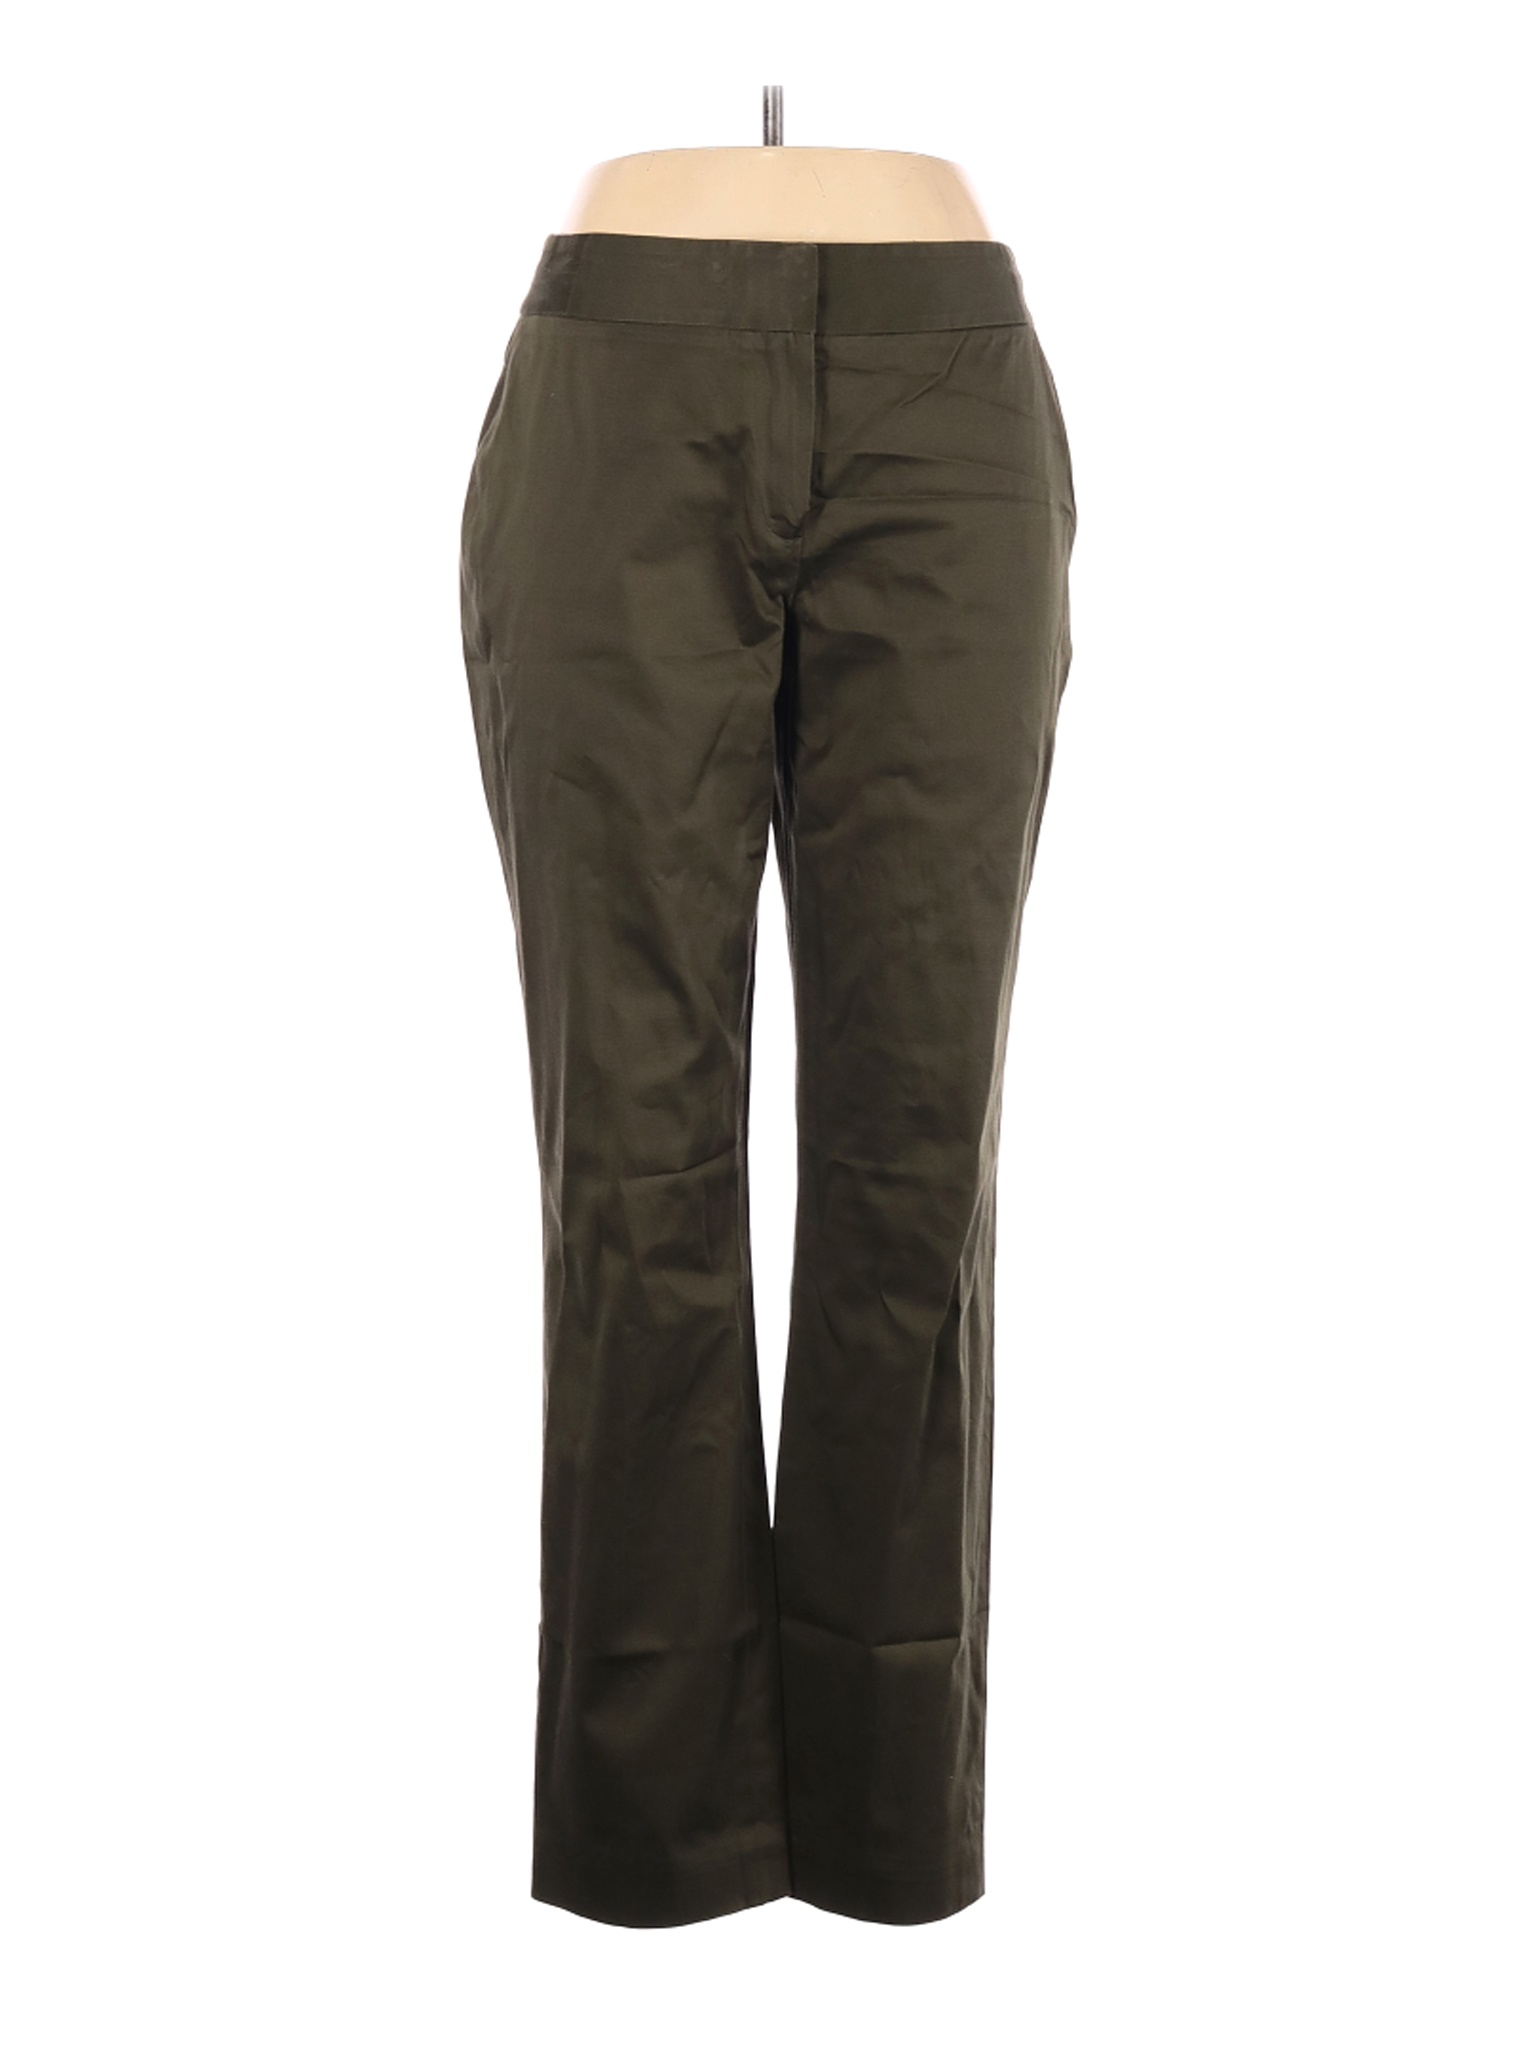 AK Anne Klein Women Green Casual Pants 10 | eBay